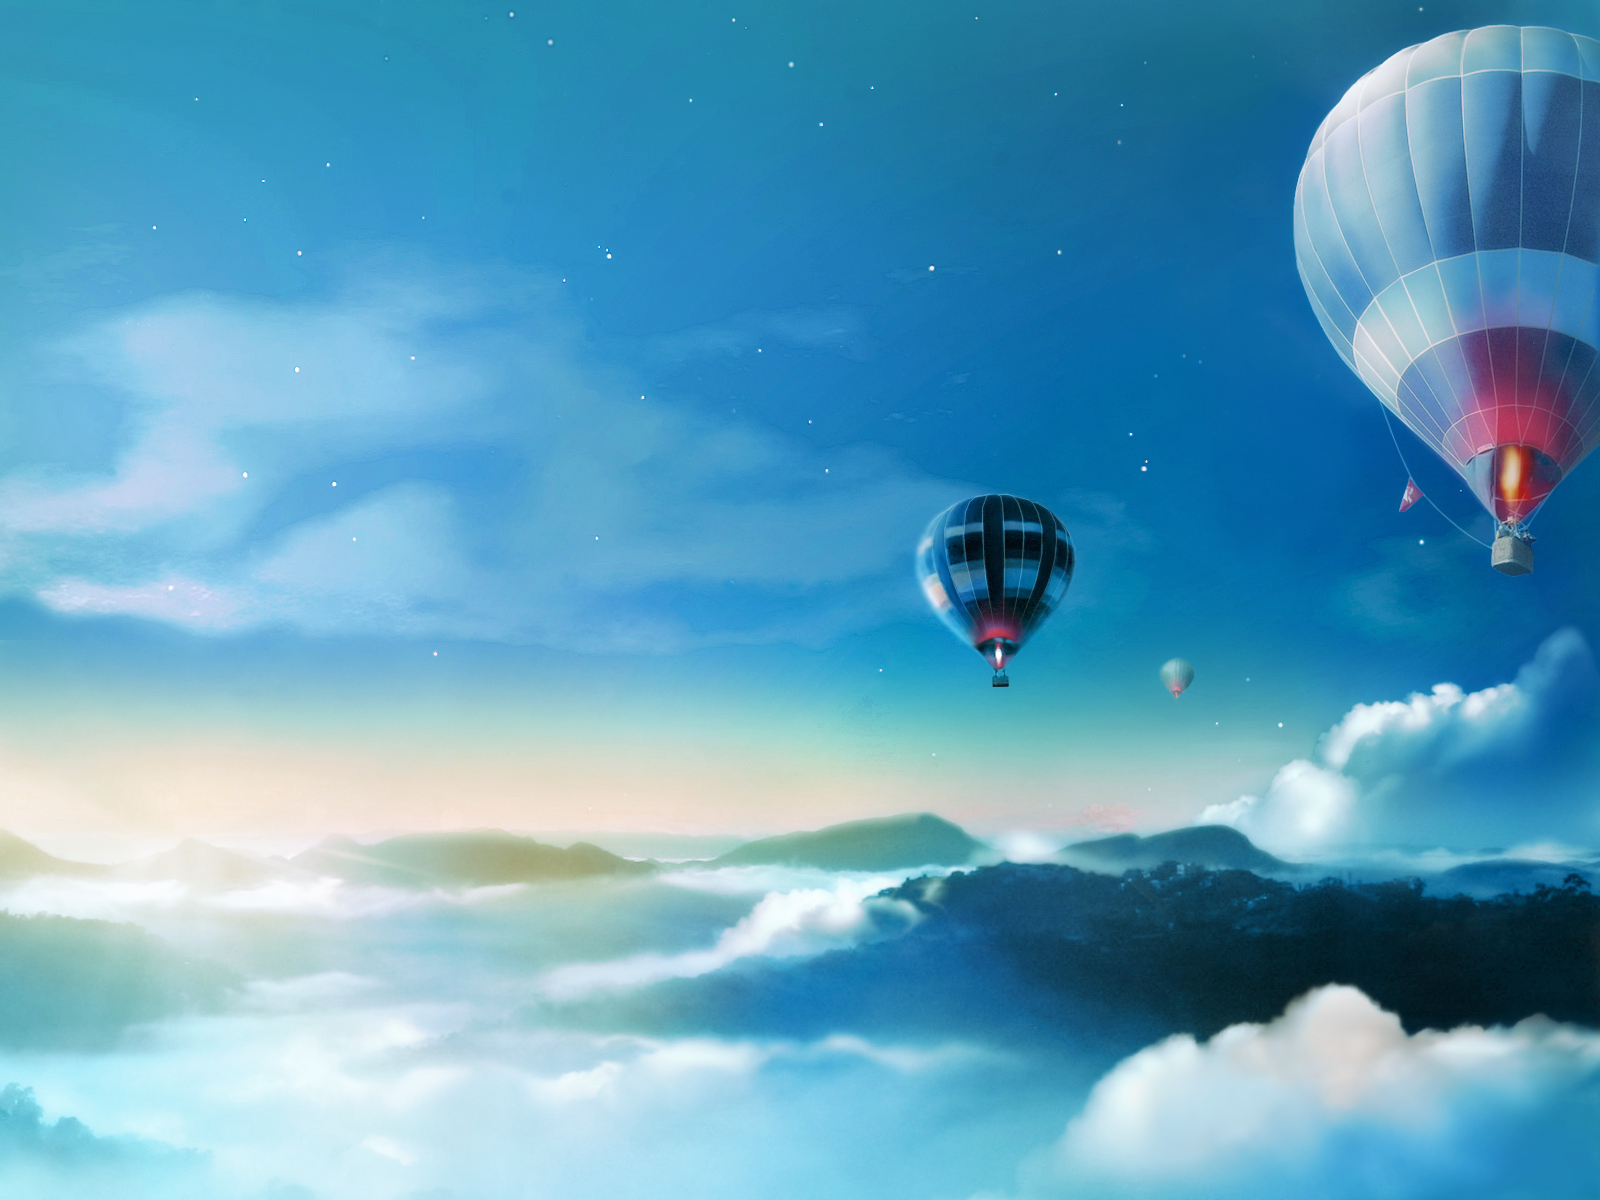 claro tapete,heißluftballon fahren,heißluftballon,himmel,atmosphäre,wolke